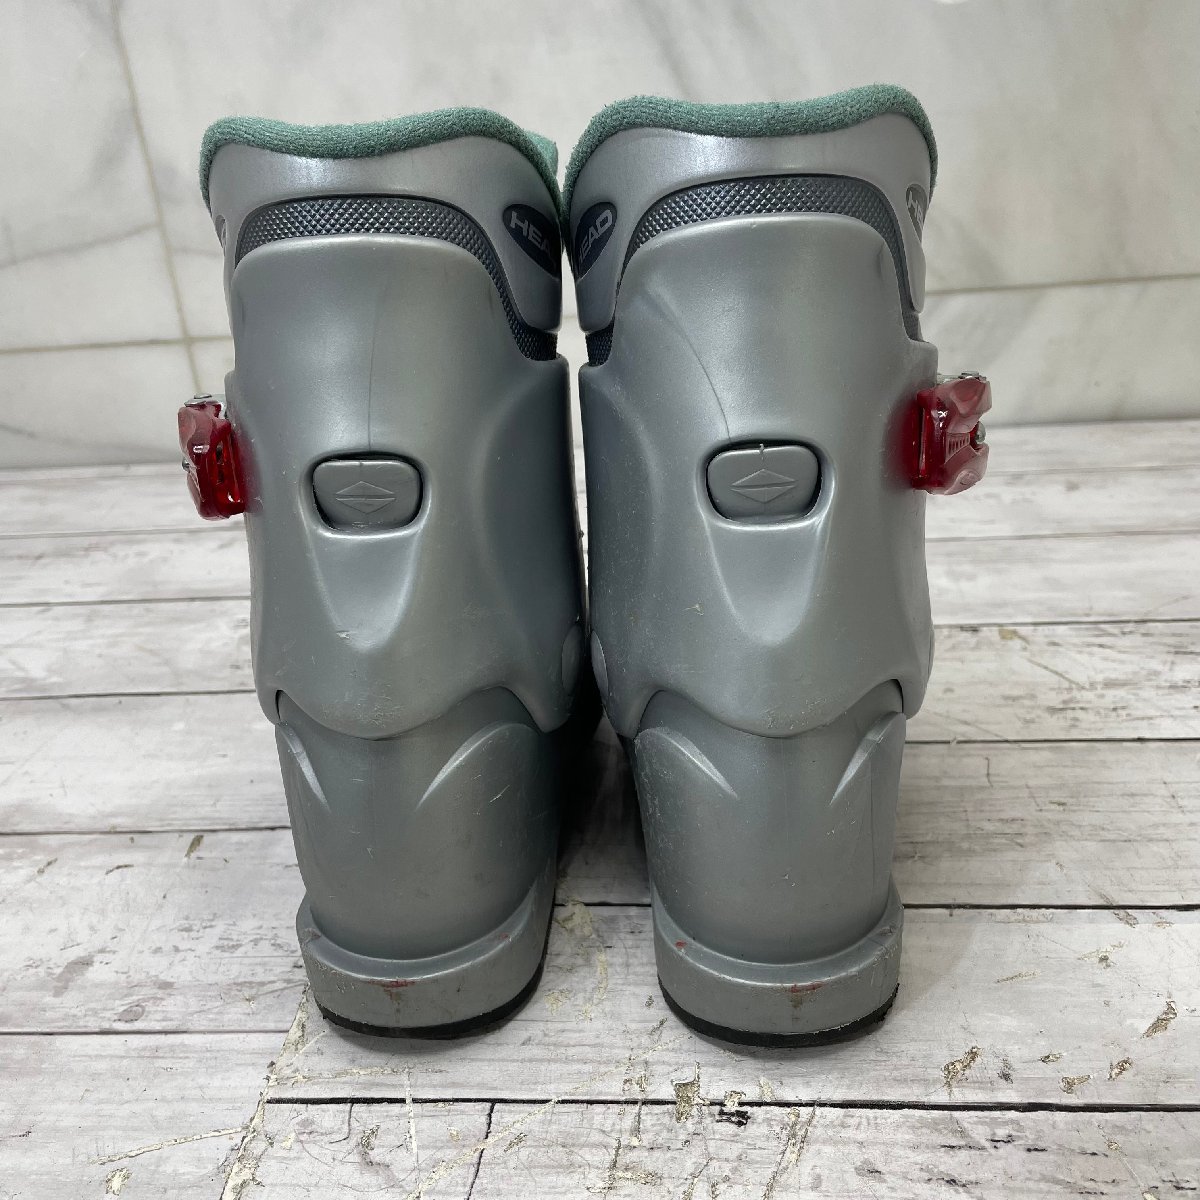 -OG- HEADjuni ASCII ботинки carve x1 б/у товар подошва размер 221mm лыжи обувь детский winter спорт зима 170-185 -T-231070